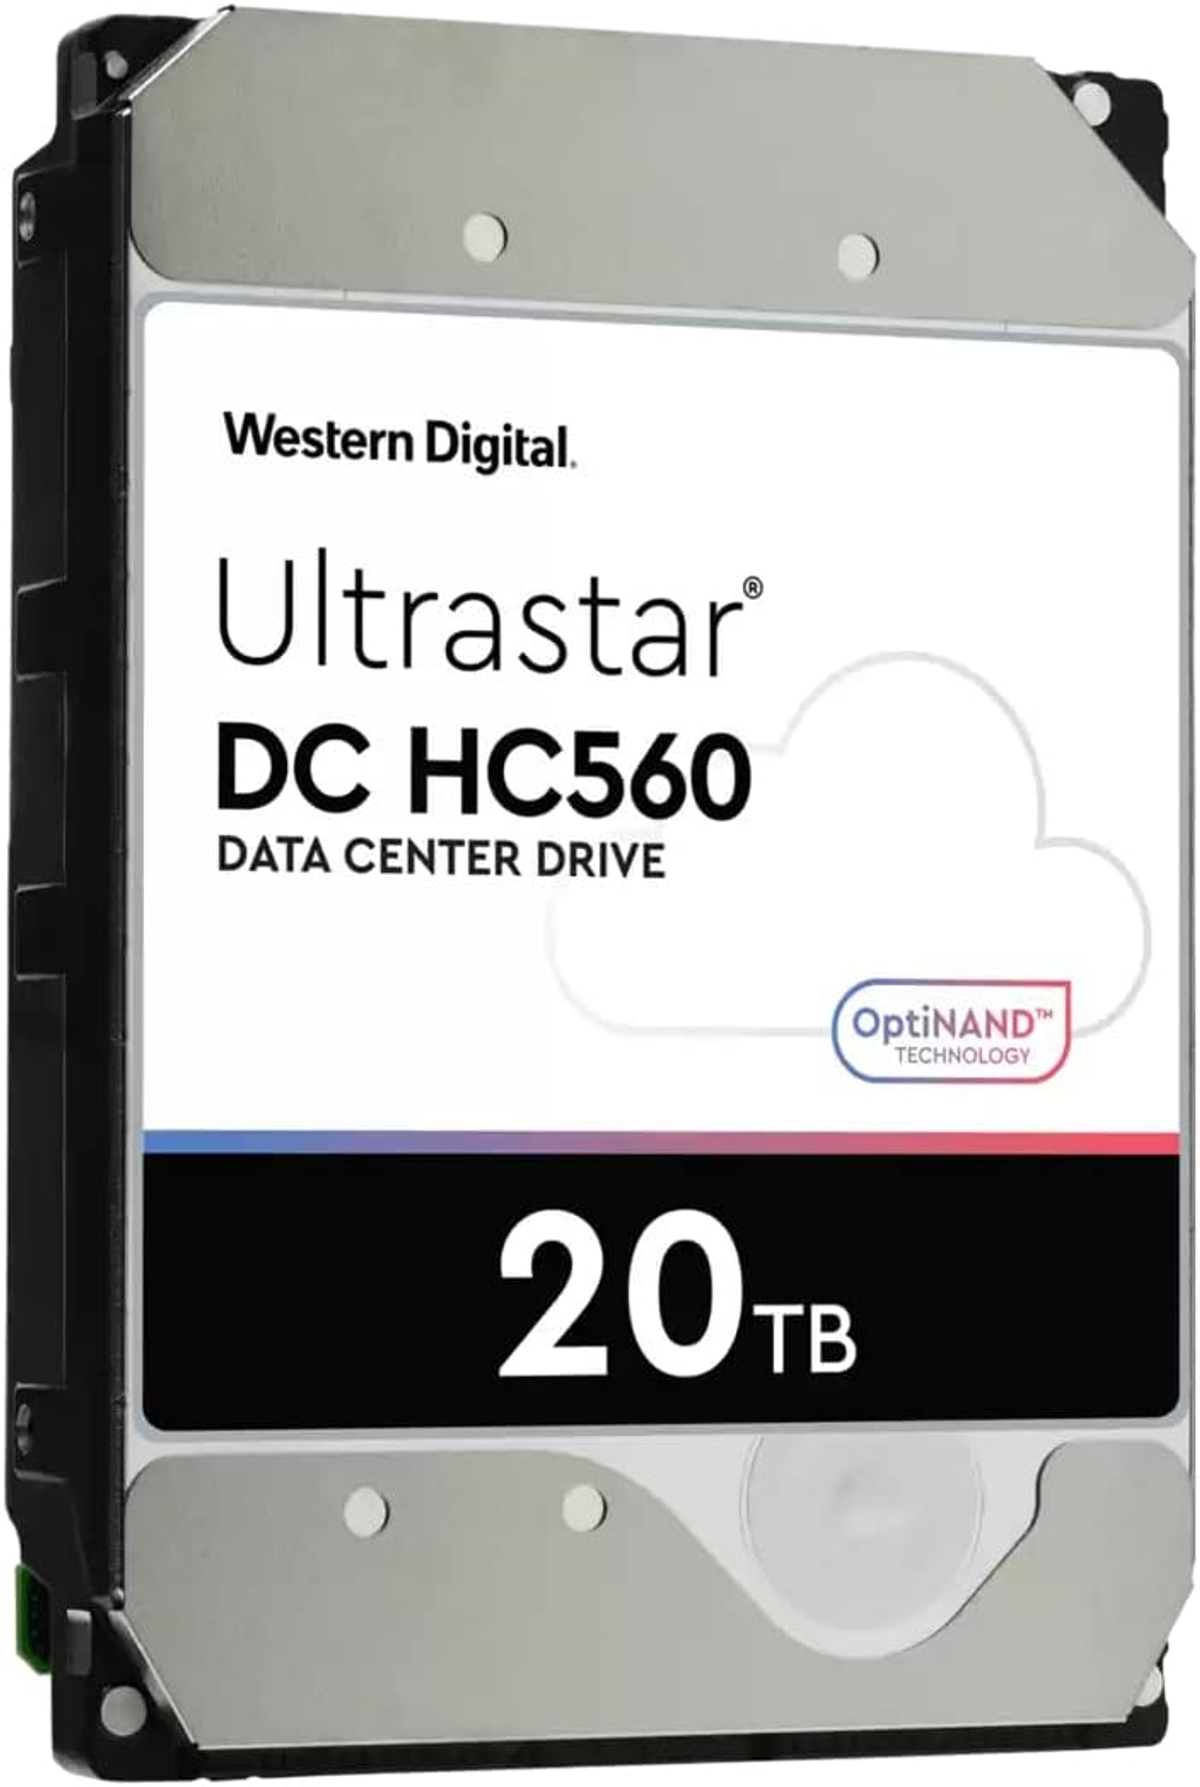 intern Ultrastar 512MB DH 20TB 20 HC560 DIGITAL WESTERN 3,5 HDD, 7200RPM WD TB, Zoll, Ent.,